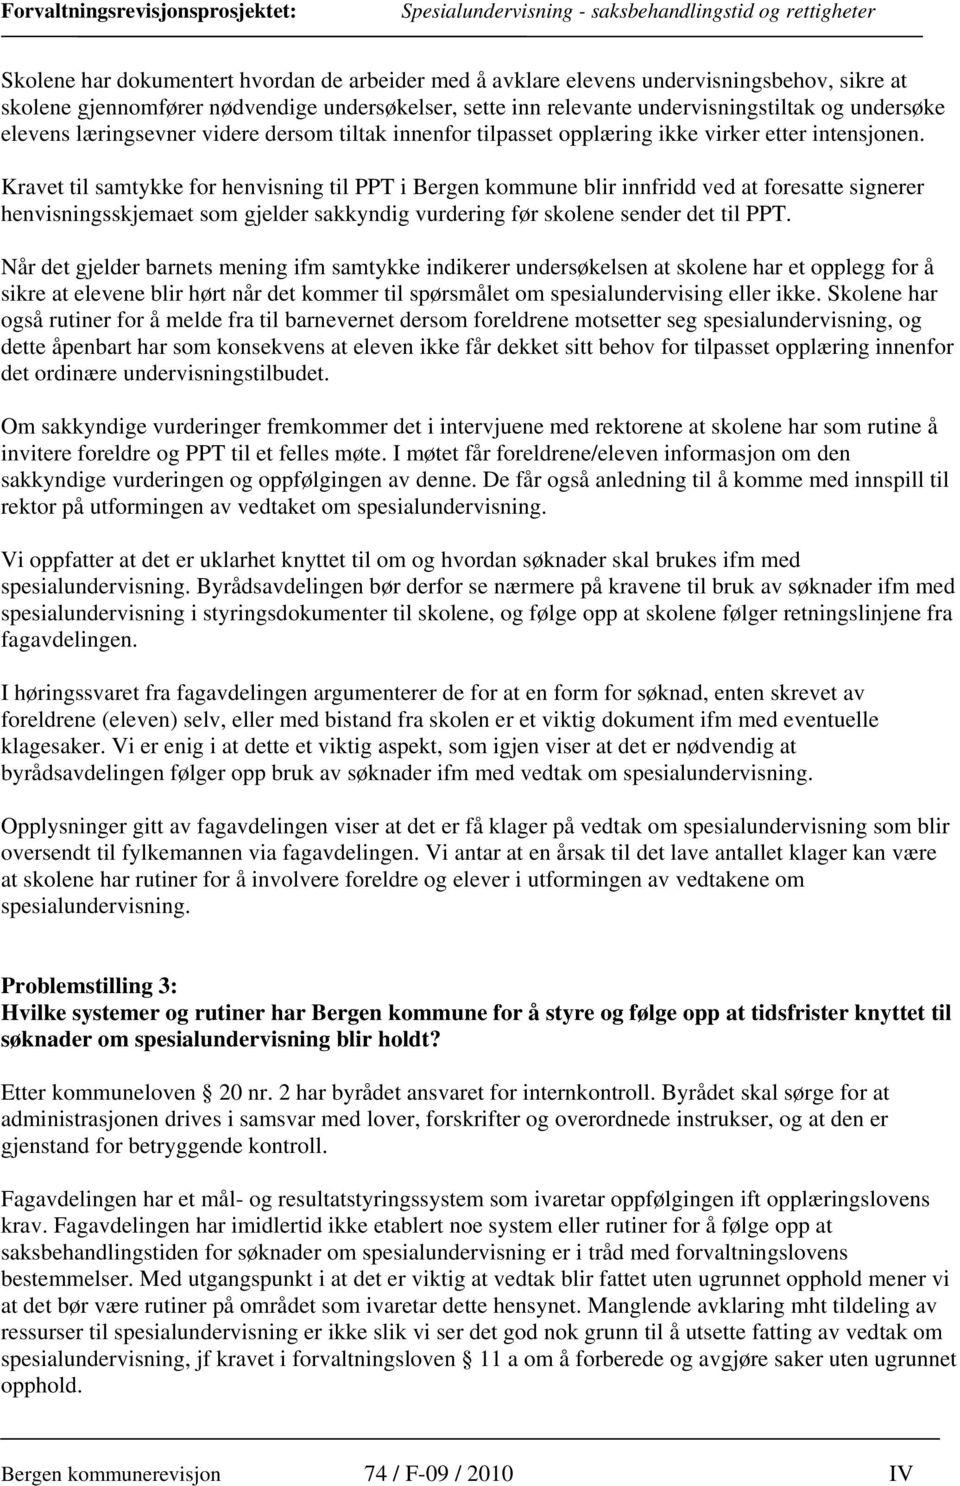 Kravet til samtykke for henvisning til PPT i Bergen kommune blir innfridd ved at foresatte signerer henvisningsskjemaet som gjelder sakkyndig vurdering før skolene sender det til PPT.